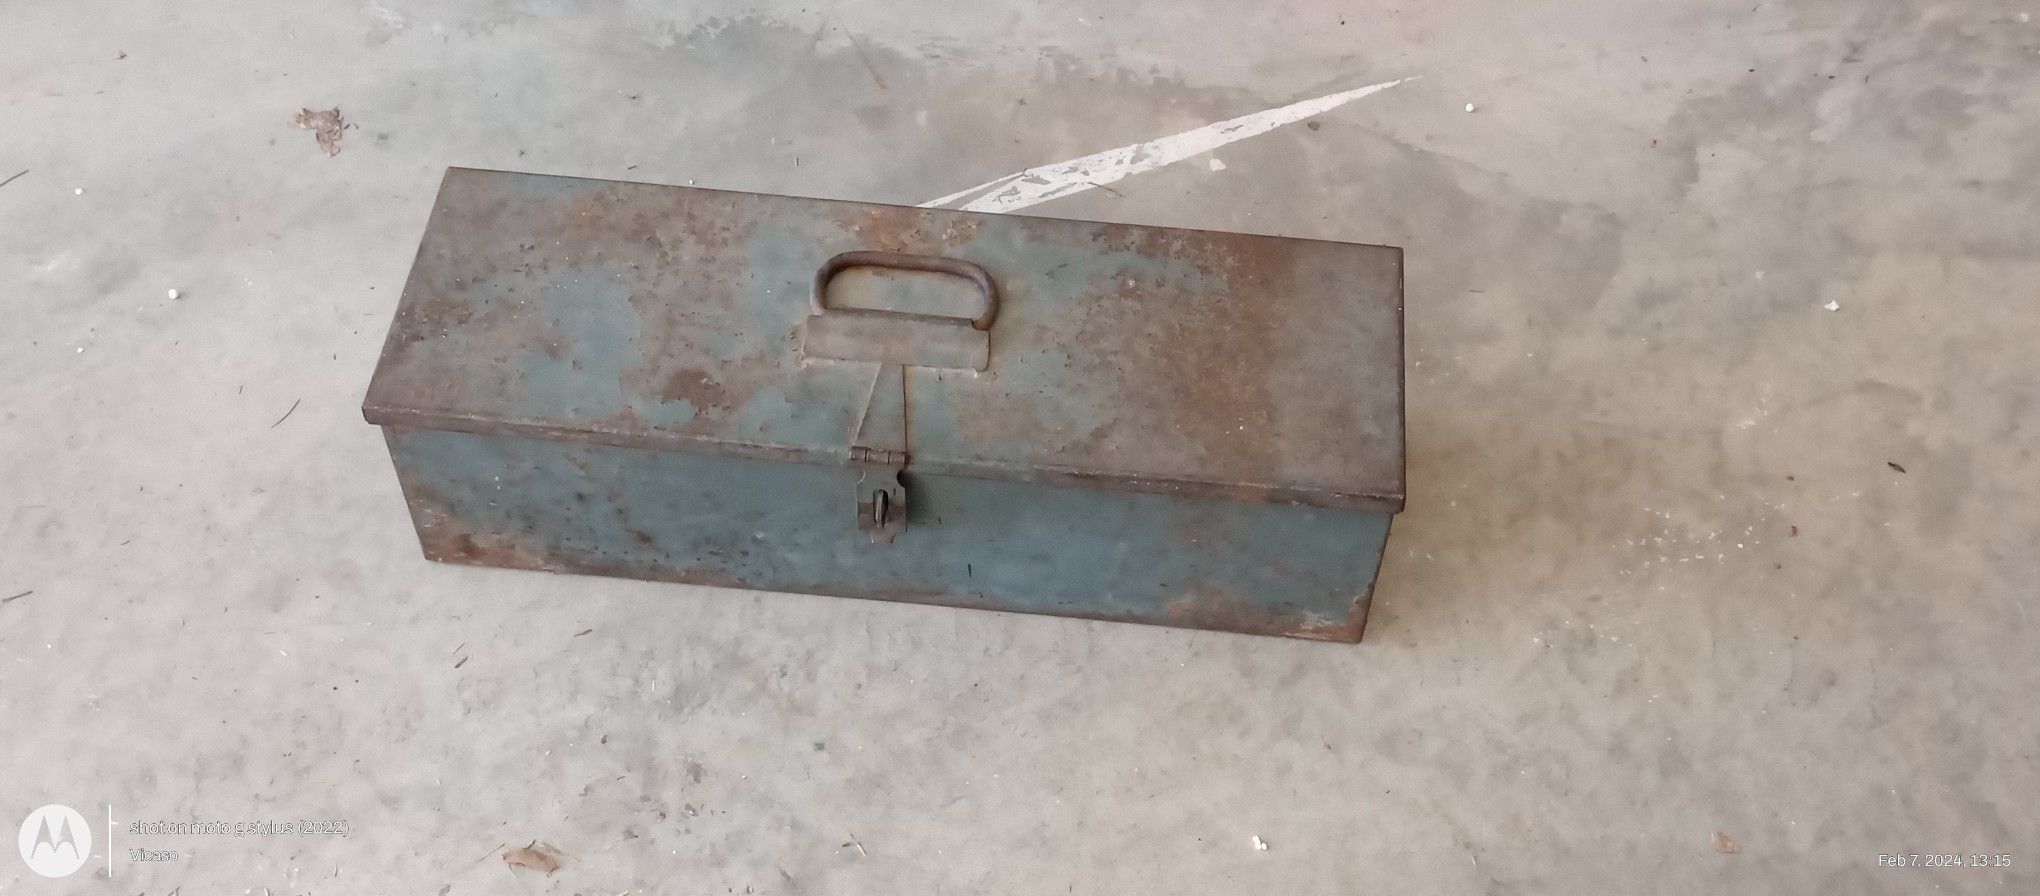 Lockbox Nice old metal Tool box